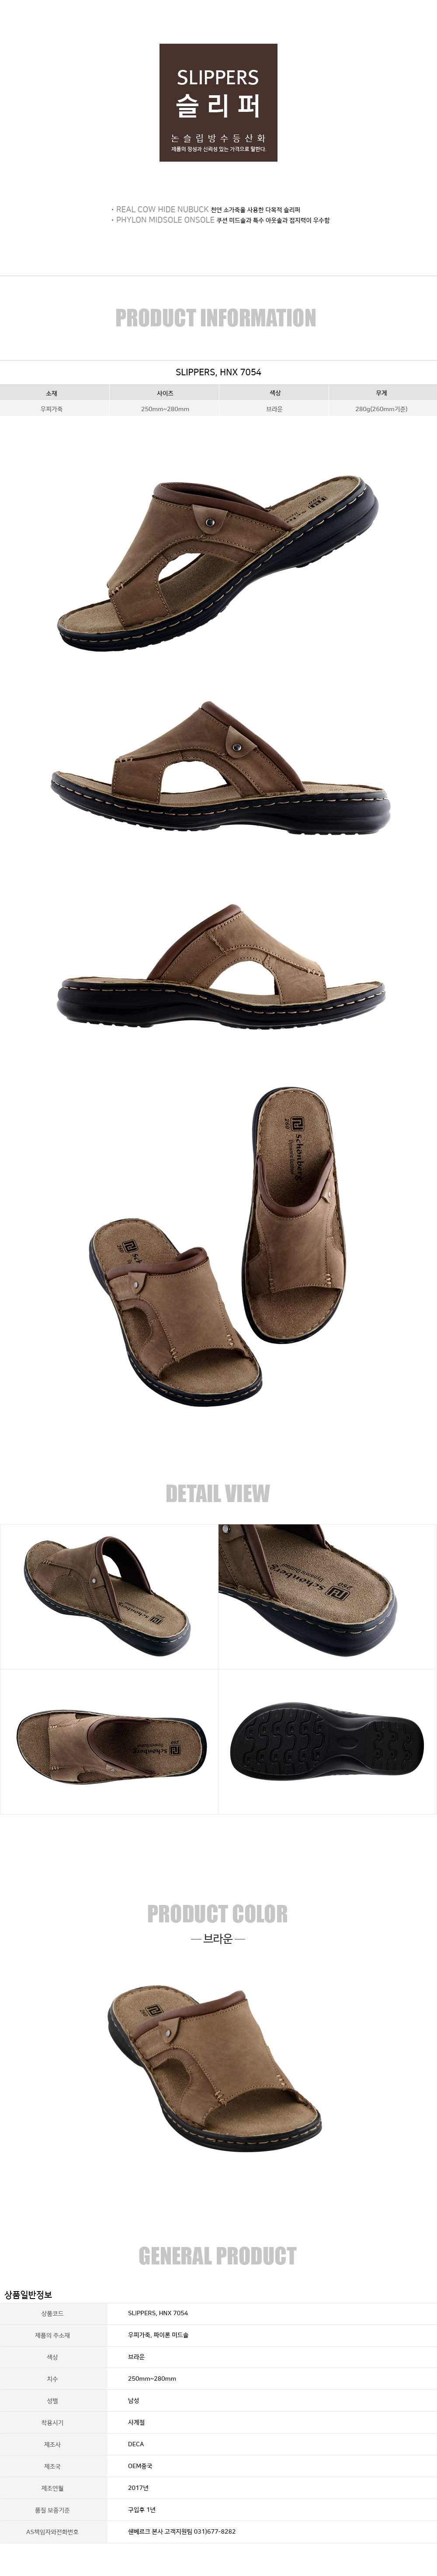 slippers-brown.jpg